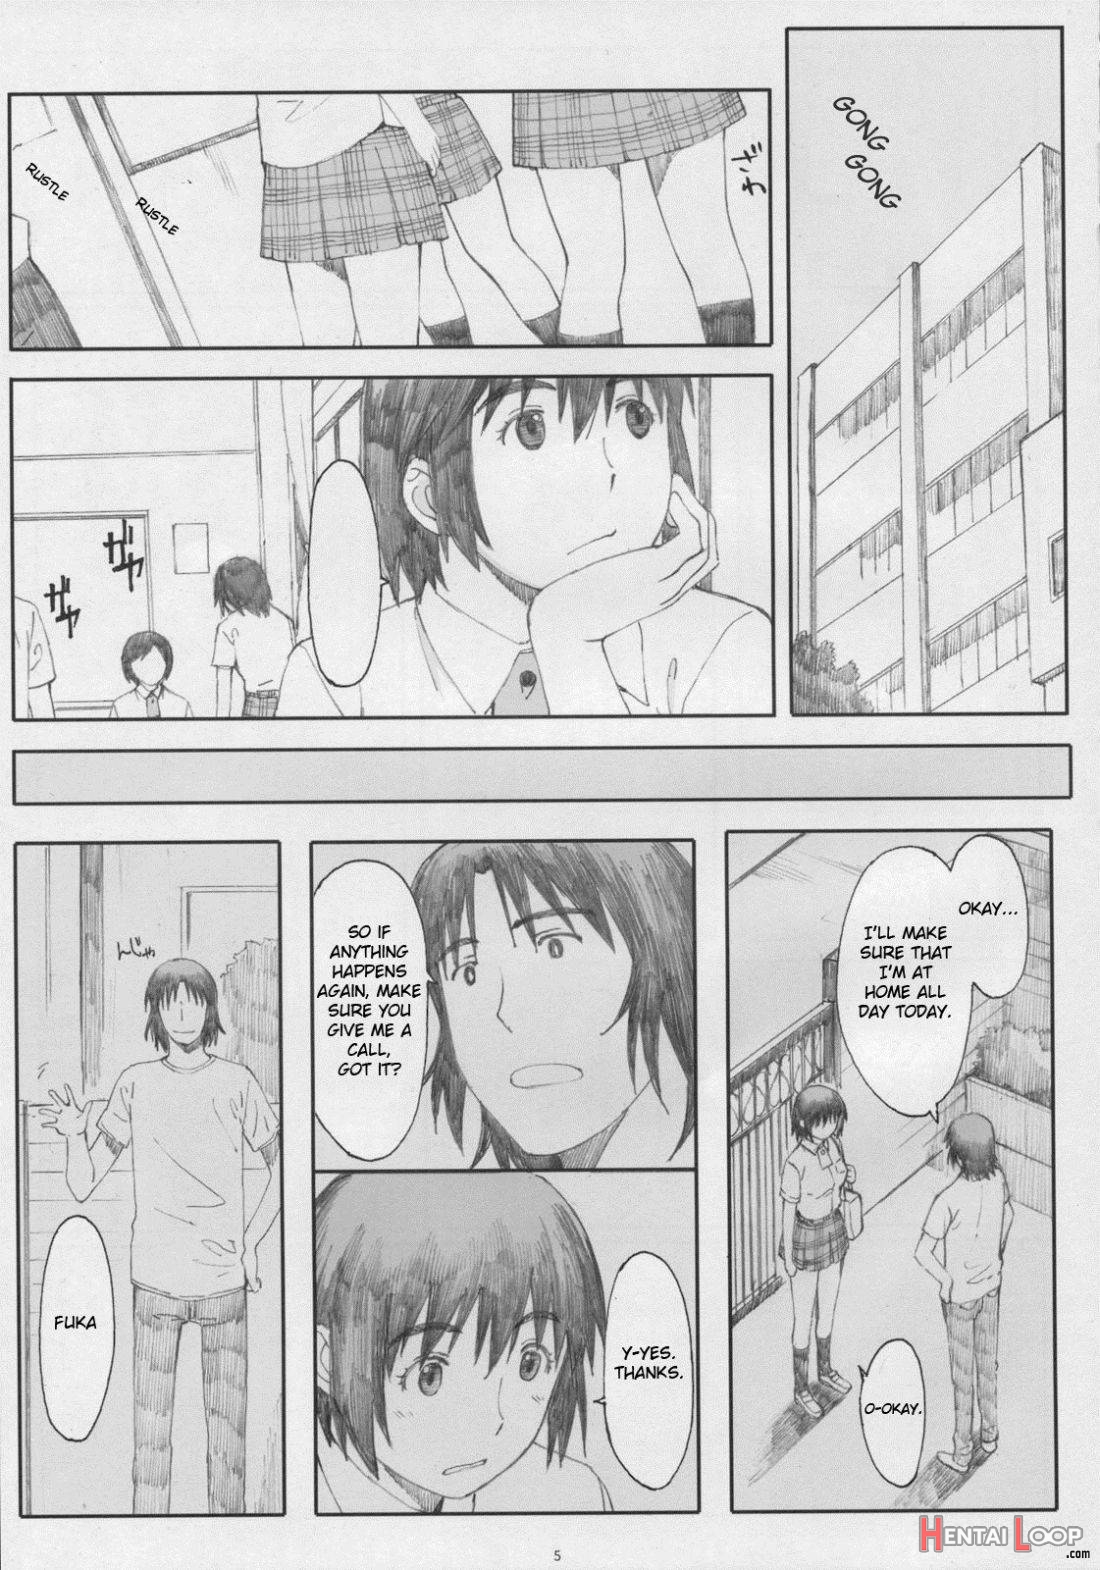 Natsukaze! 5 page 2